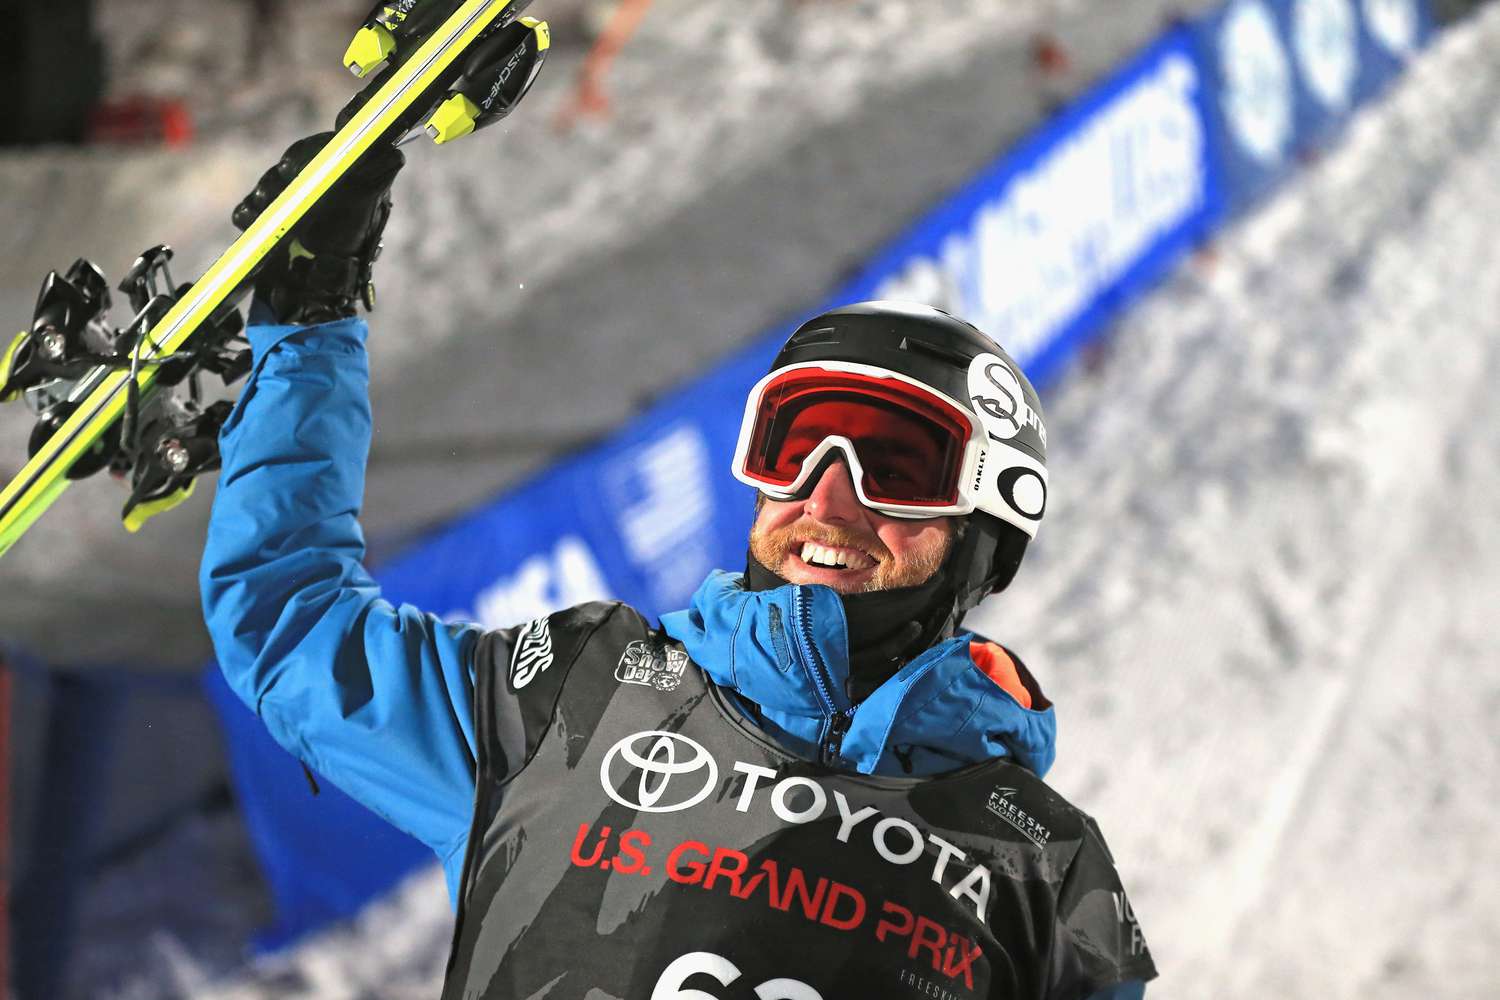 Esquiador norte-americano Kyle Smaine morre em avalanche no Japão